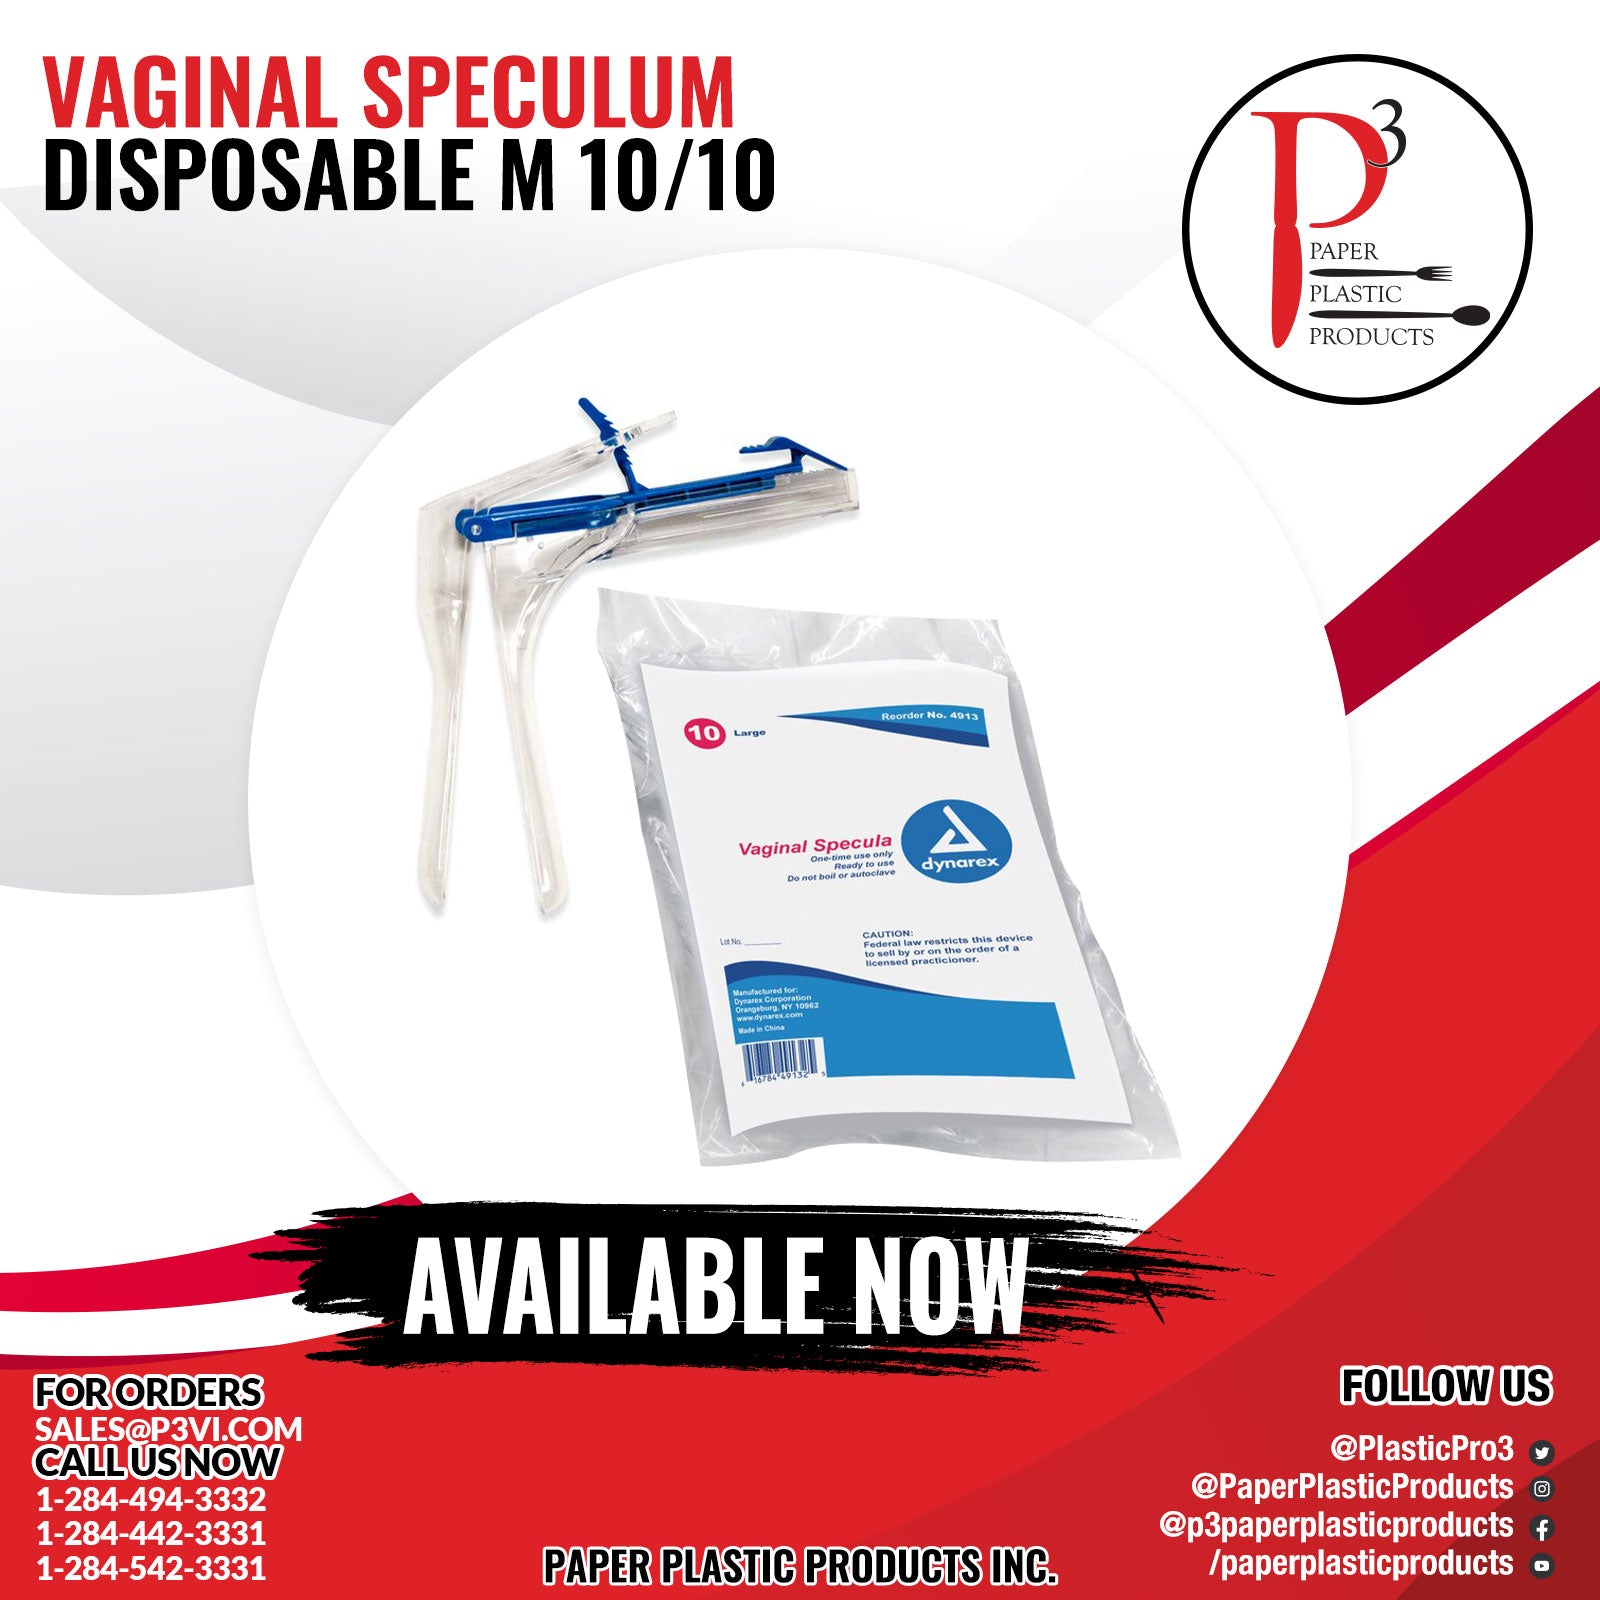 Vaginal Speculum Disposable M 1/10/10